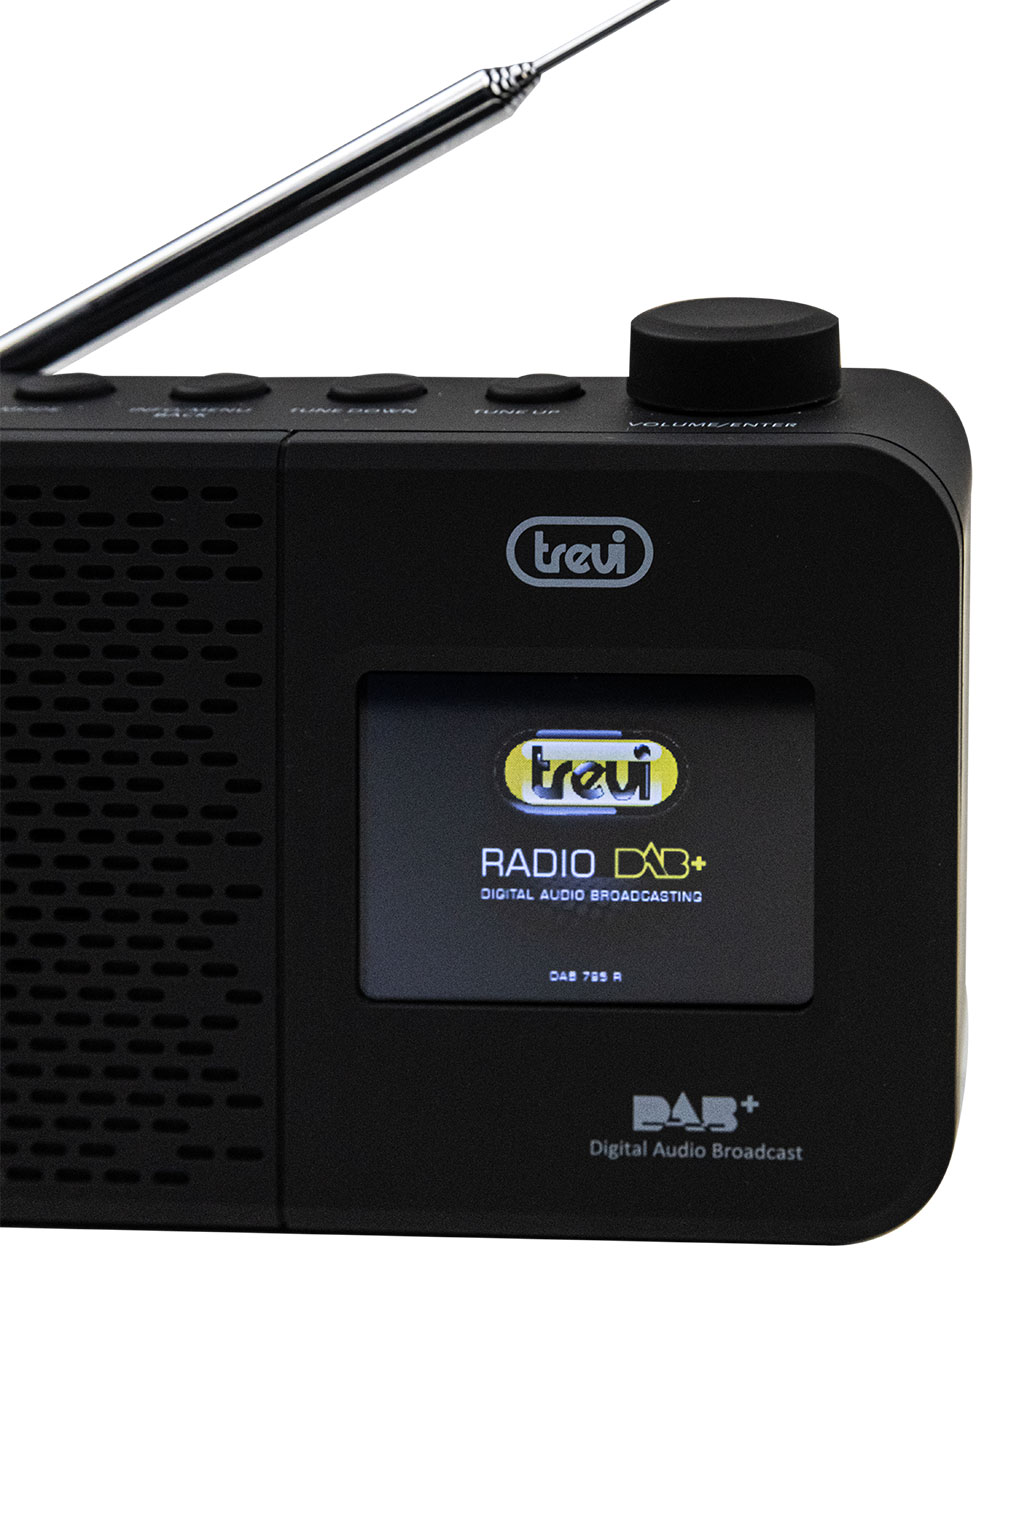 TREVI - Radio Digitale Portatile DAB 7F90 R con Ricevitore DAB